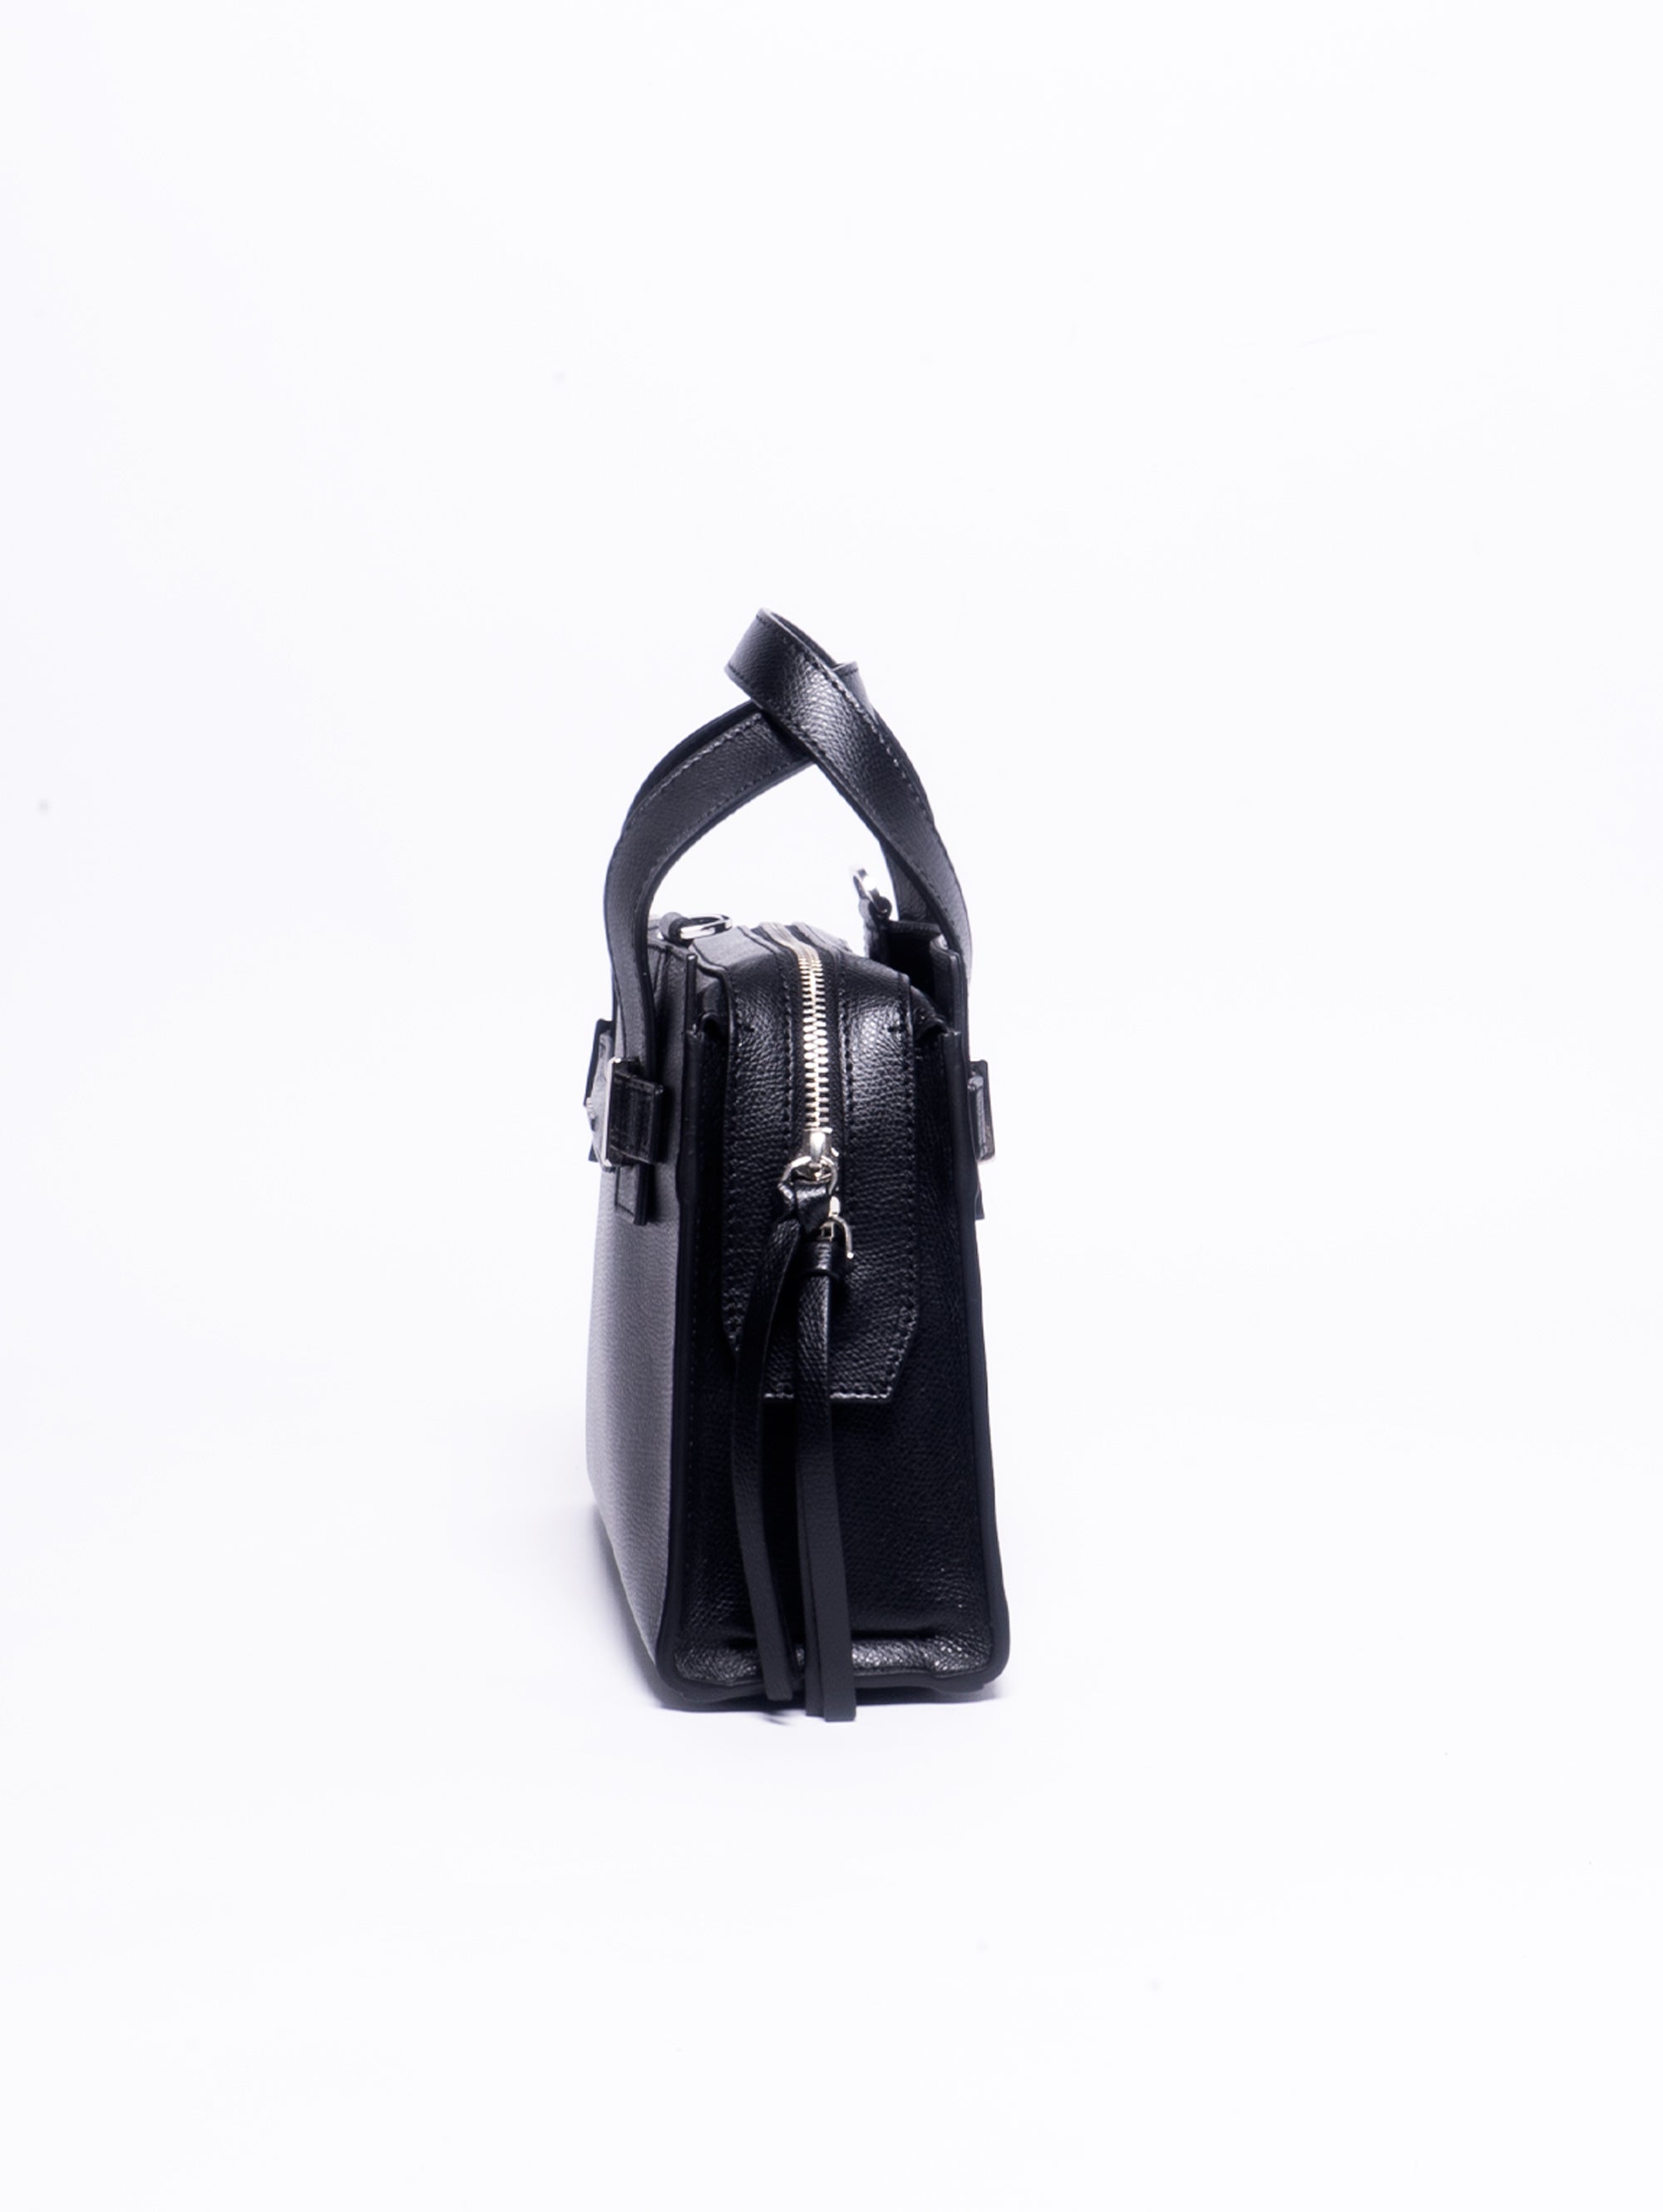 Posh Handbag Black